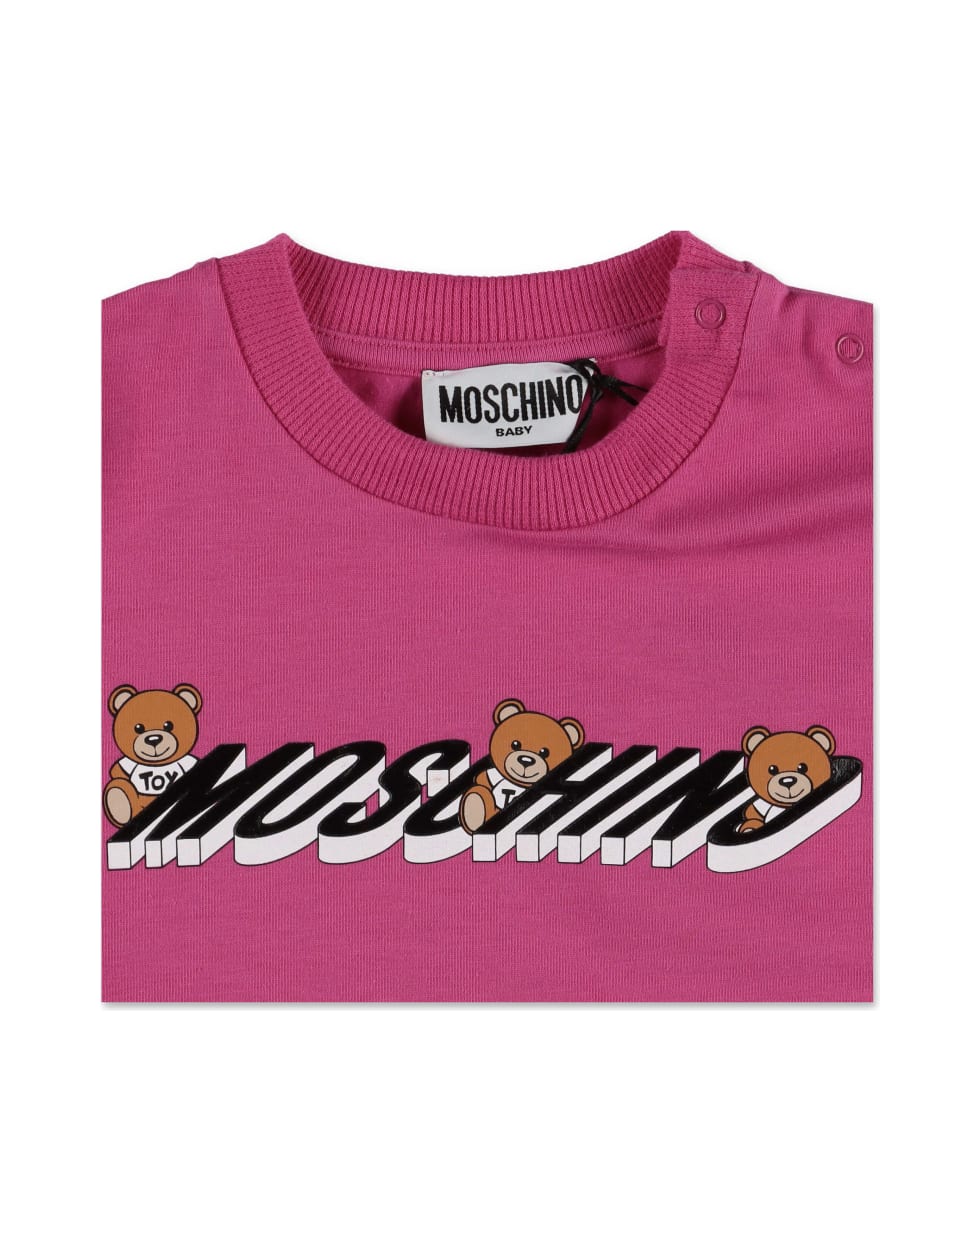 Moschino T-shirt Fucsia In Jersey Di Cotone - Fucsia